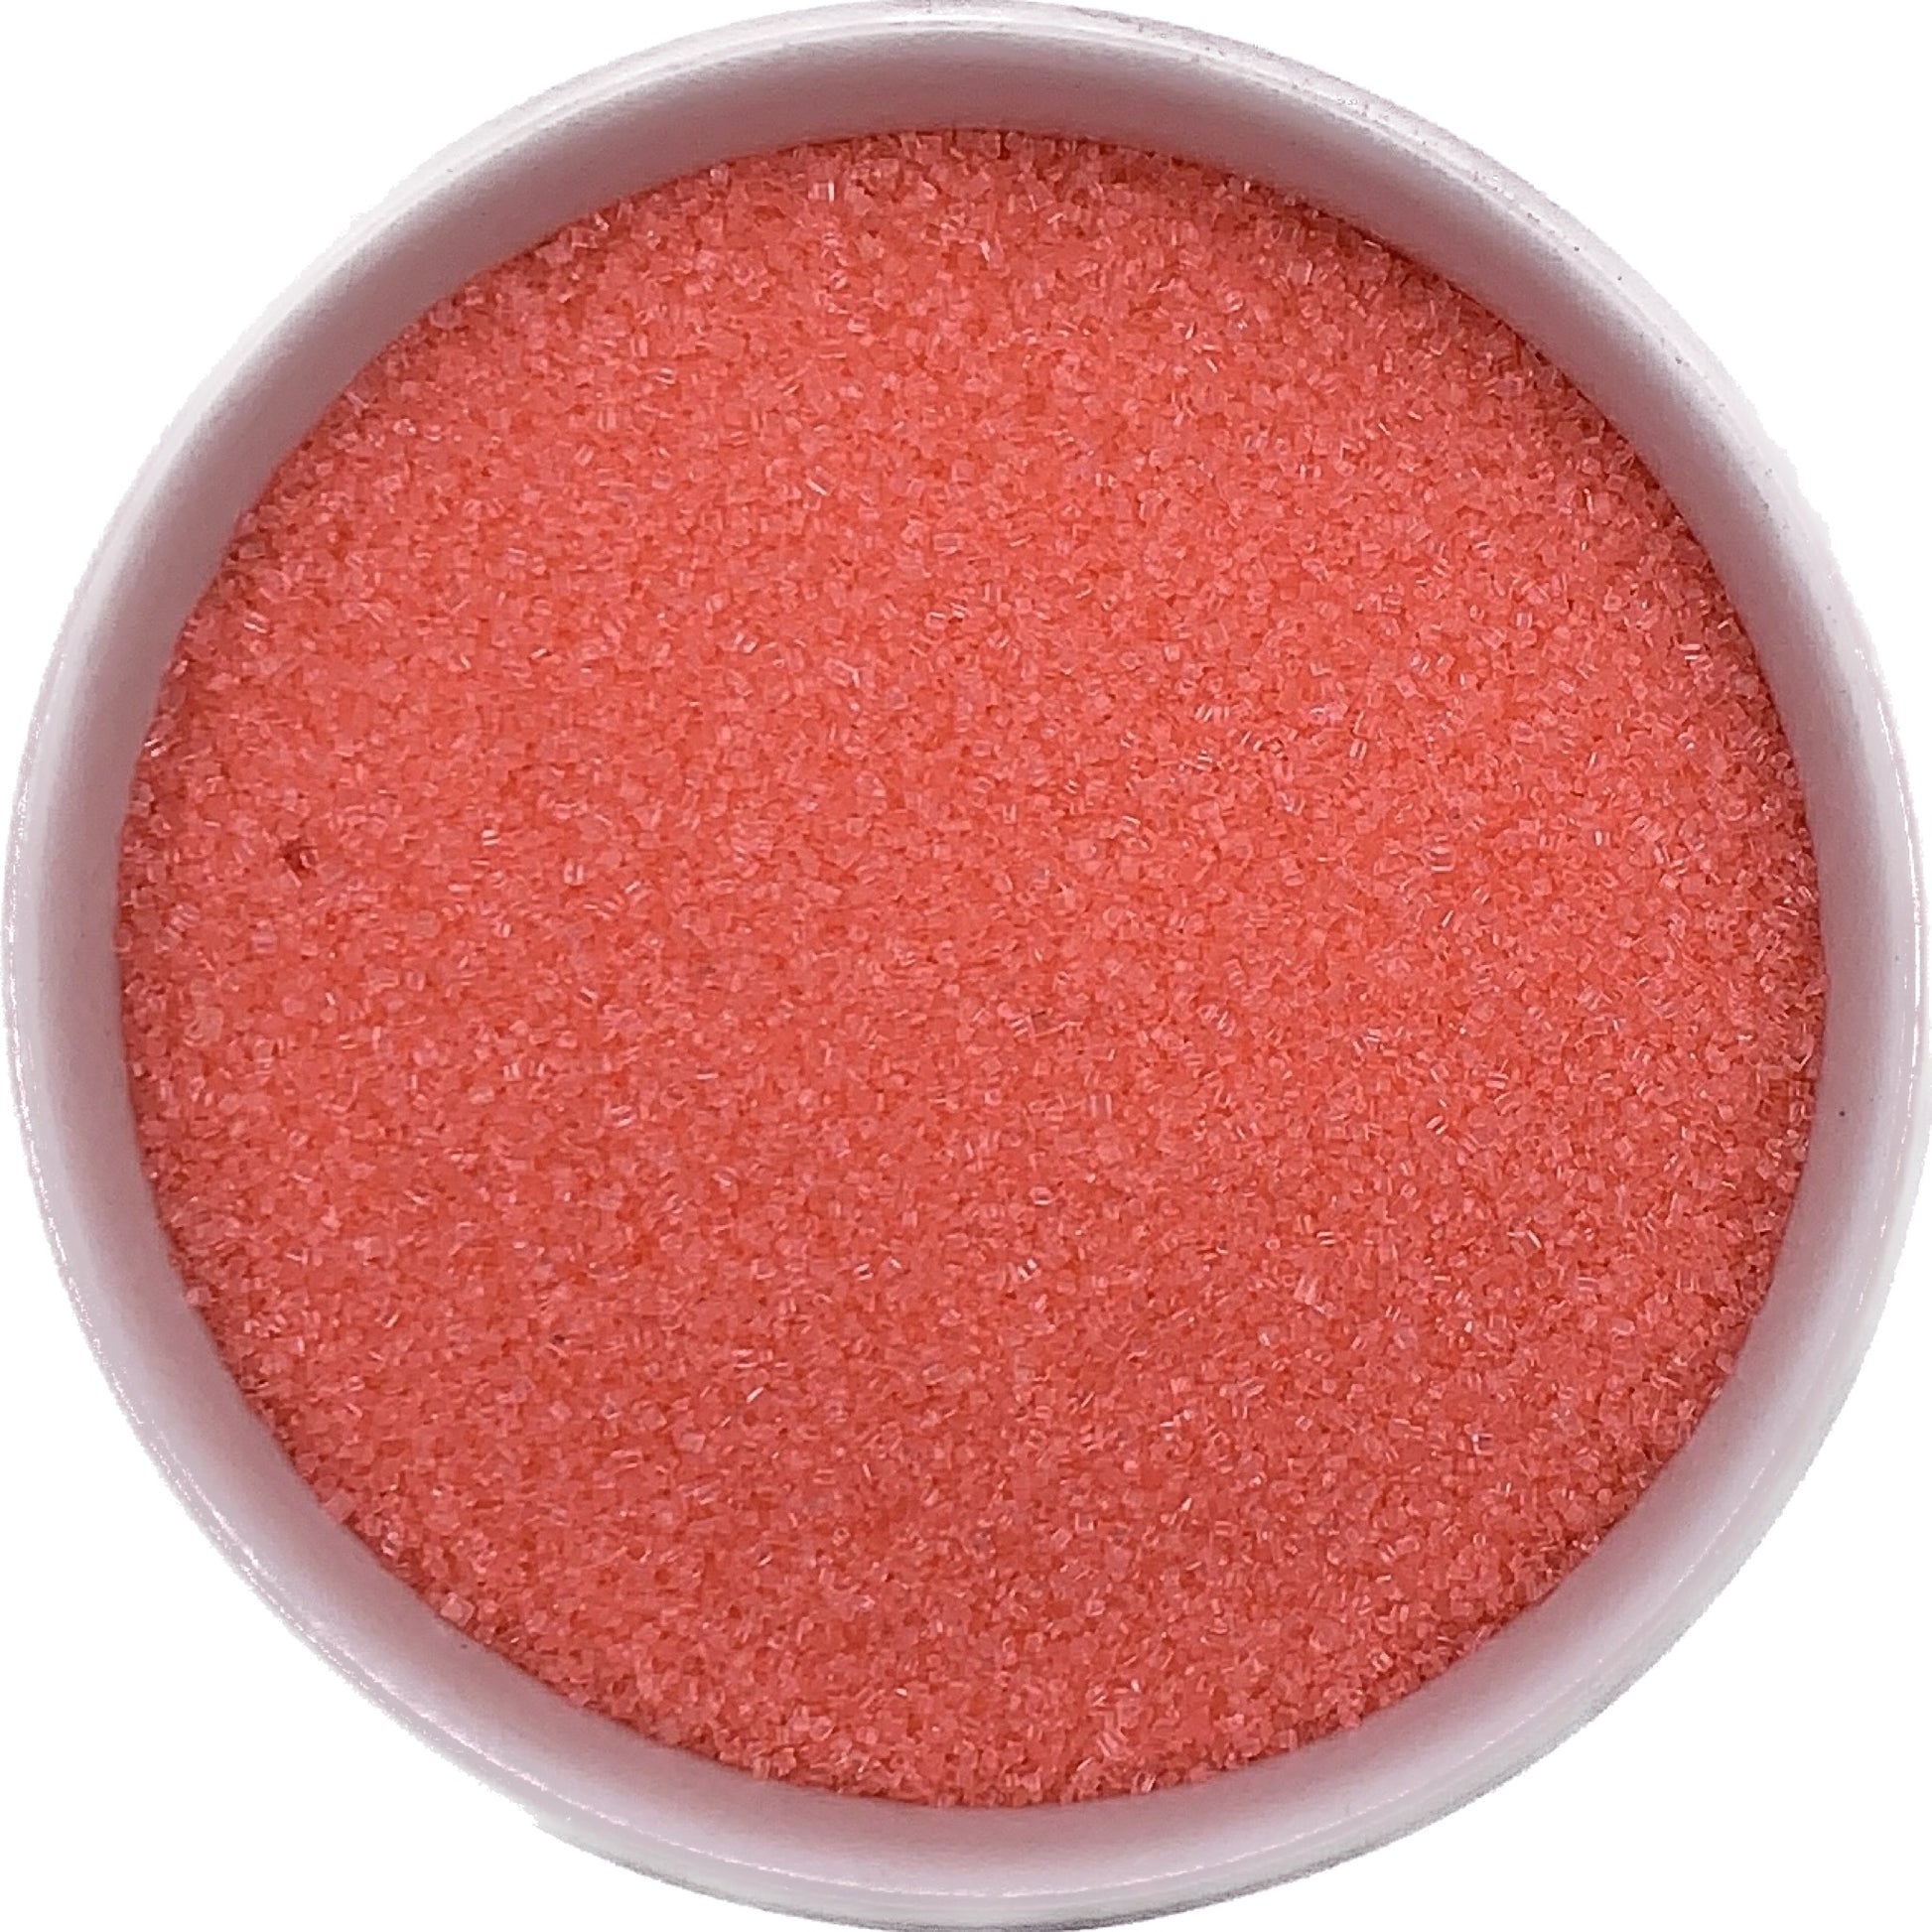 Coral colored fine sanding sugar